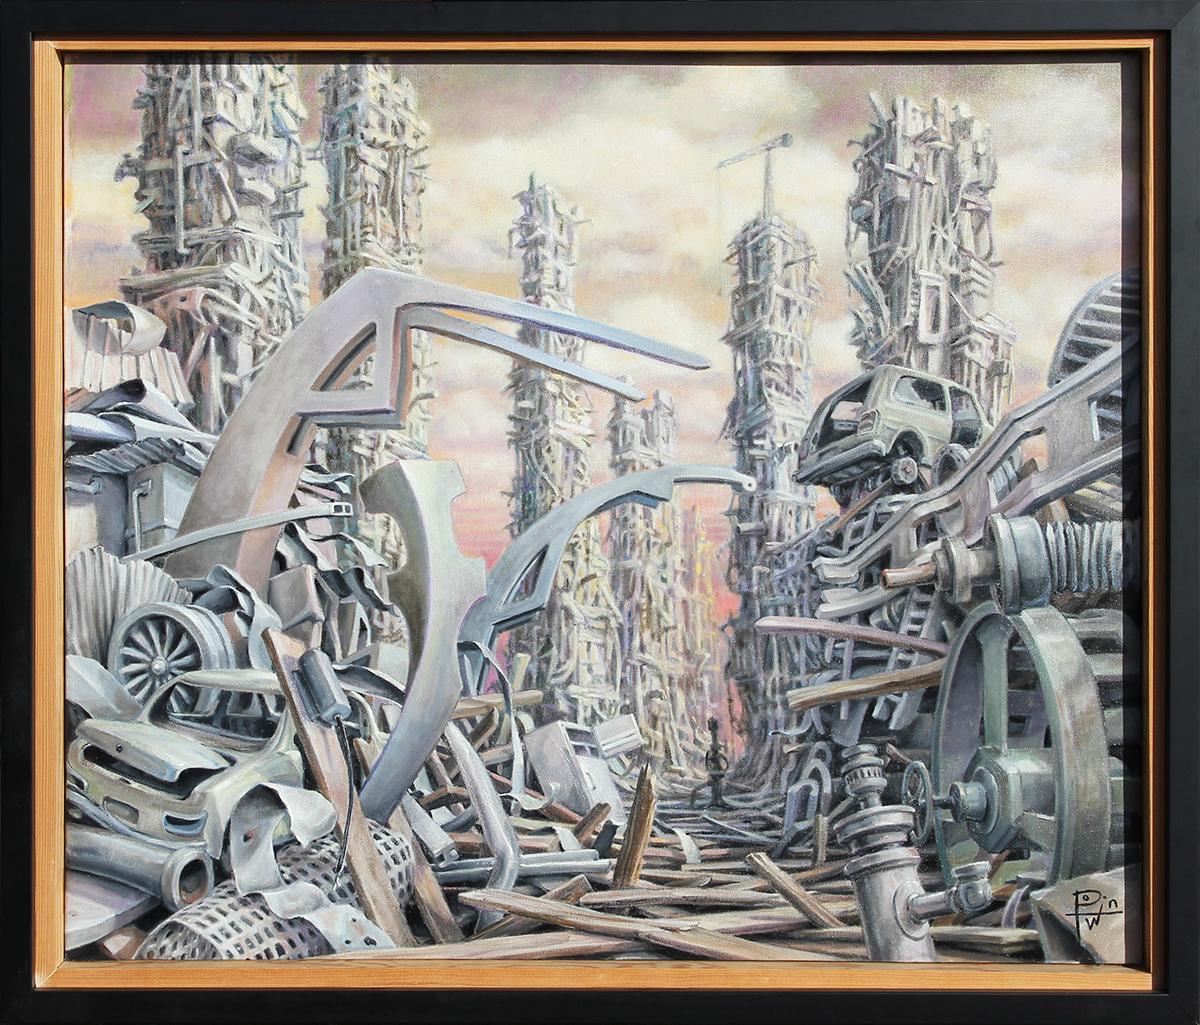 Landscape Painting Henry David Potwin - "Legacy" - Peinture de paysage surréaliste contemporaine d'une dystopia industrielle